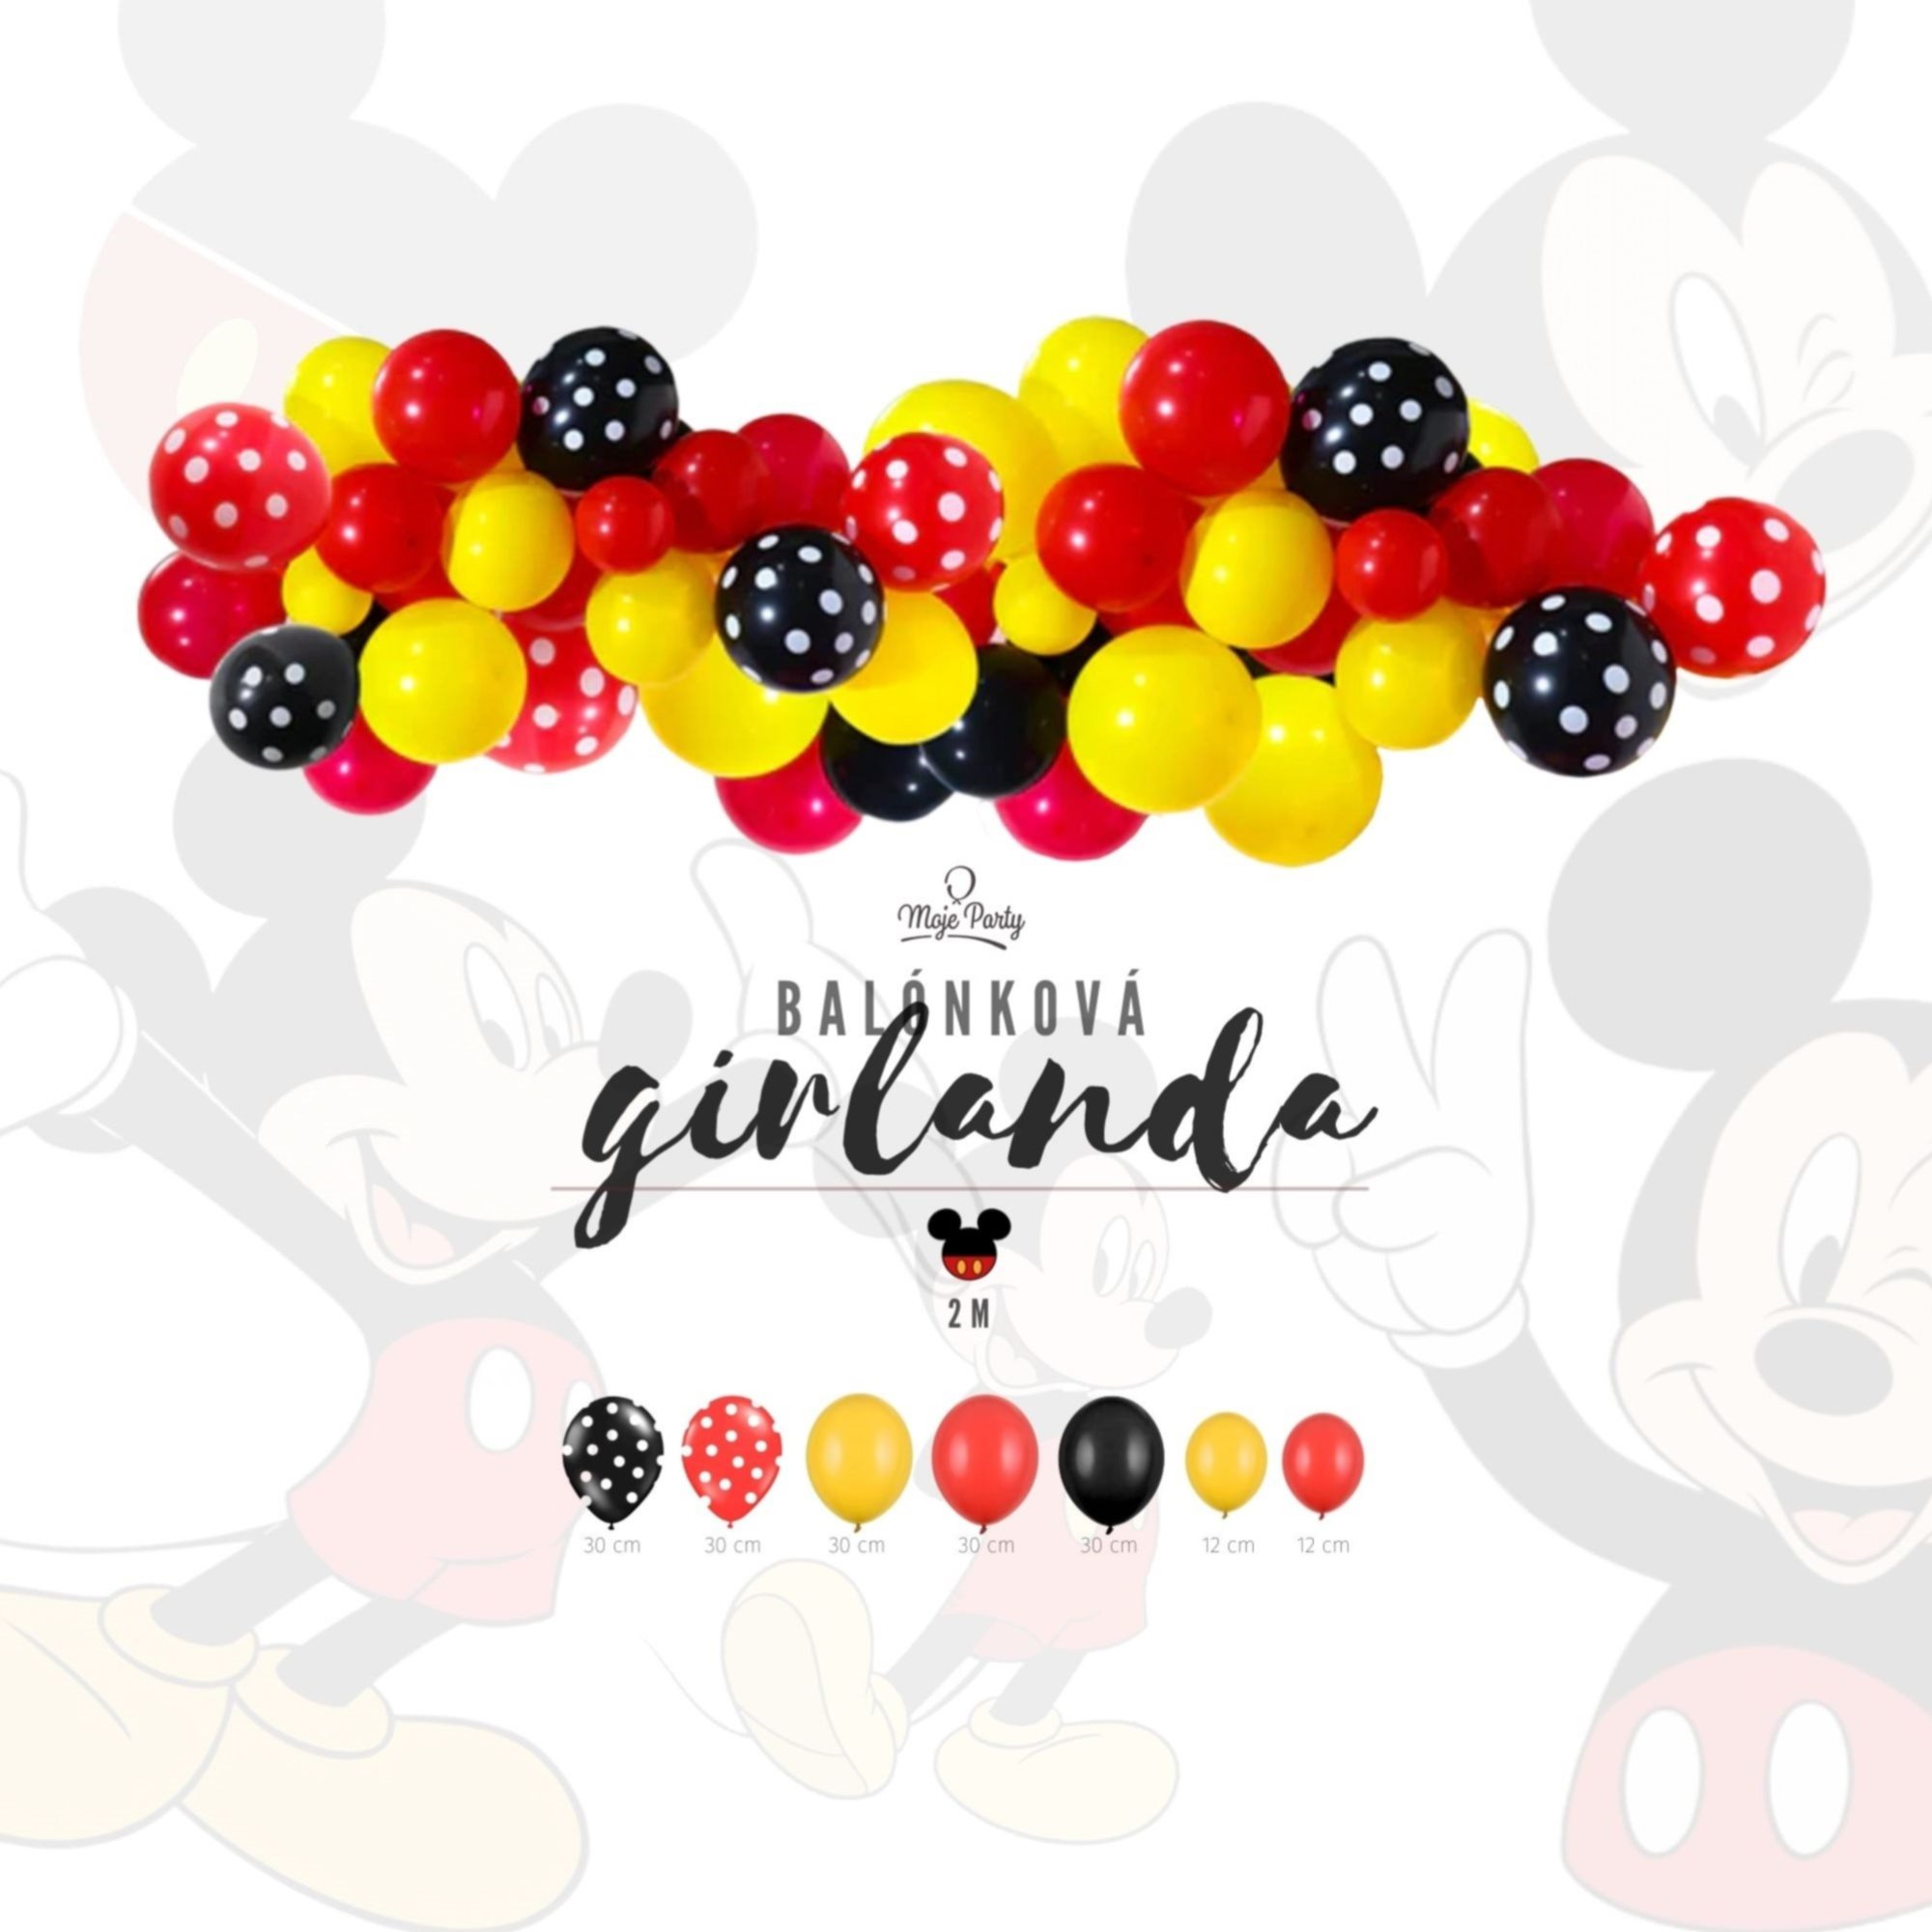 Balónková girlanda set – Mickey mouse colors 2 m